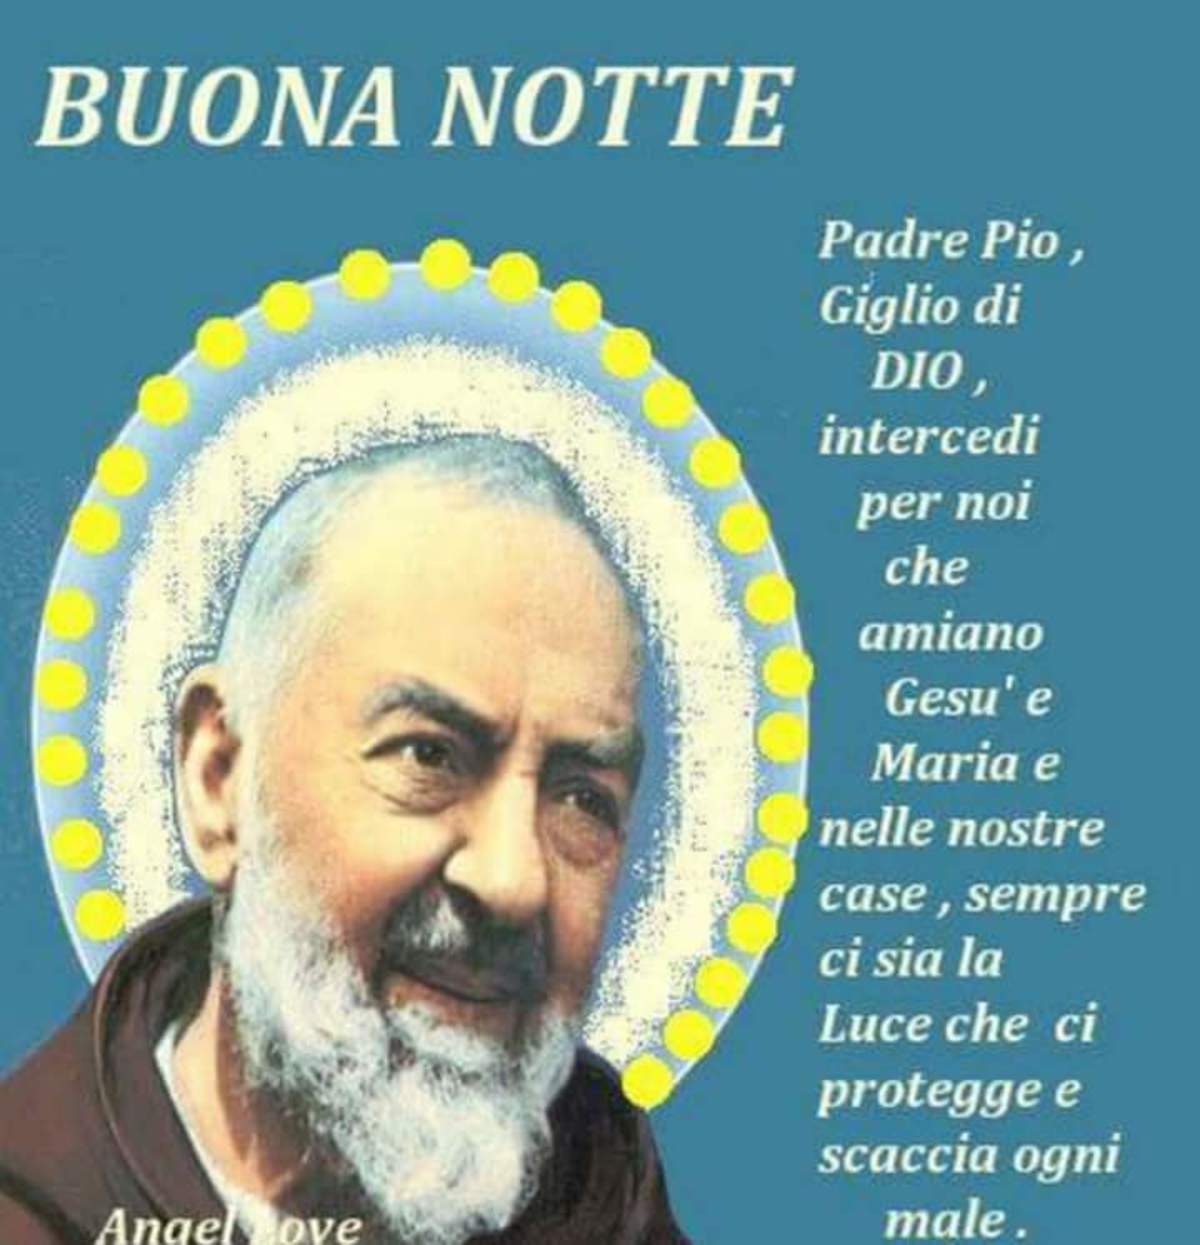 Buonanotte con Preghiera a Padre Pio